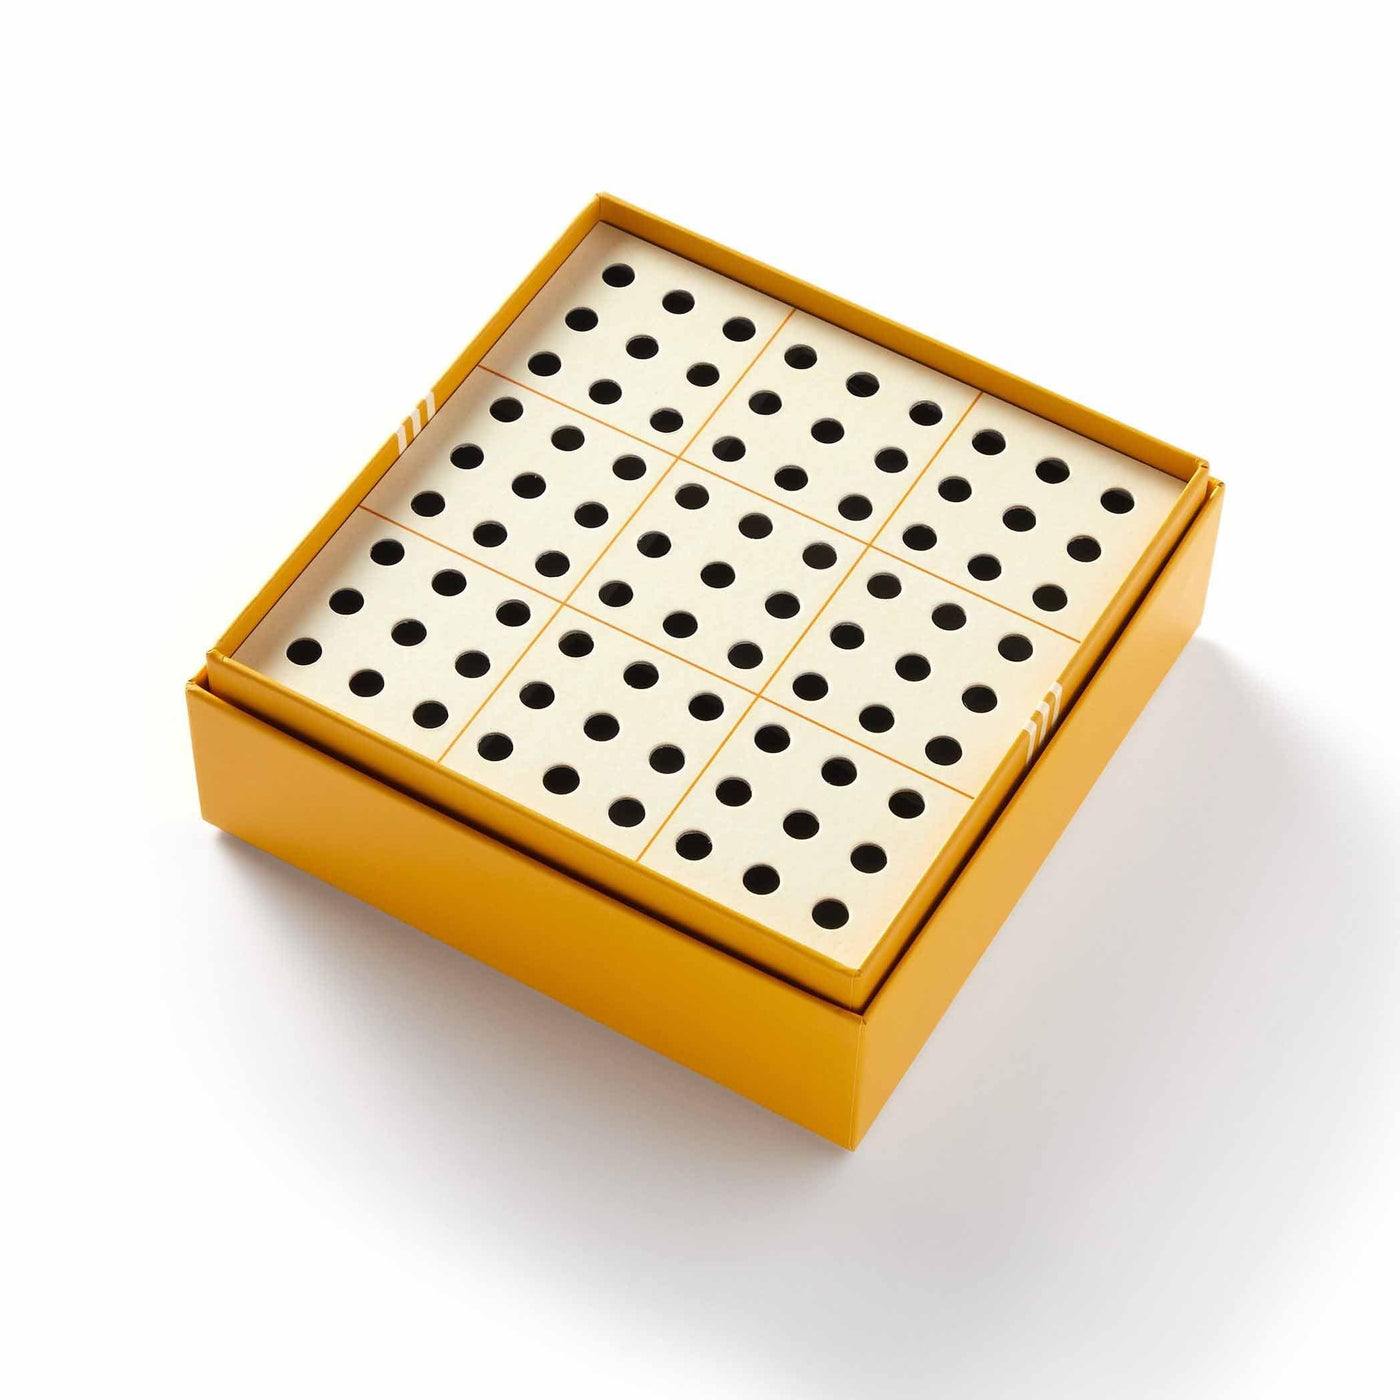 81 boules de bois, des défis captivants : le Sudoku de Brass Monkey offre une expérience visuelle unique. Un jeu esthétique et ludique, seul ou entre amis.